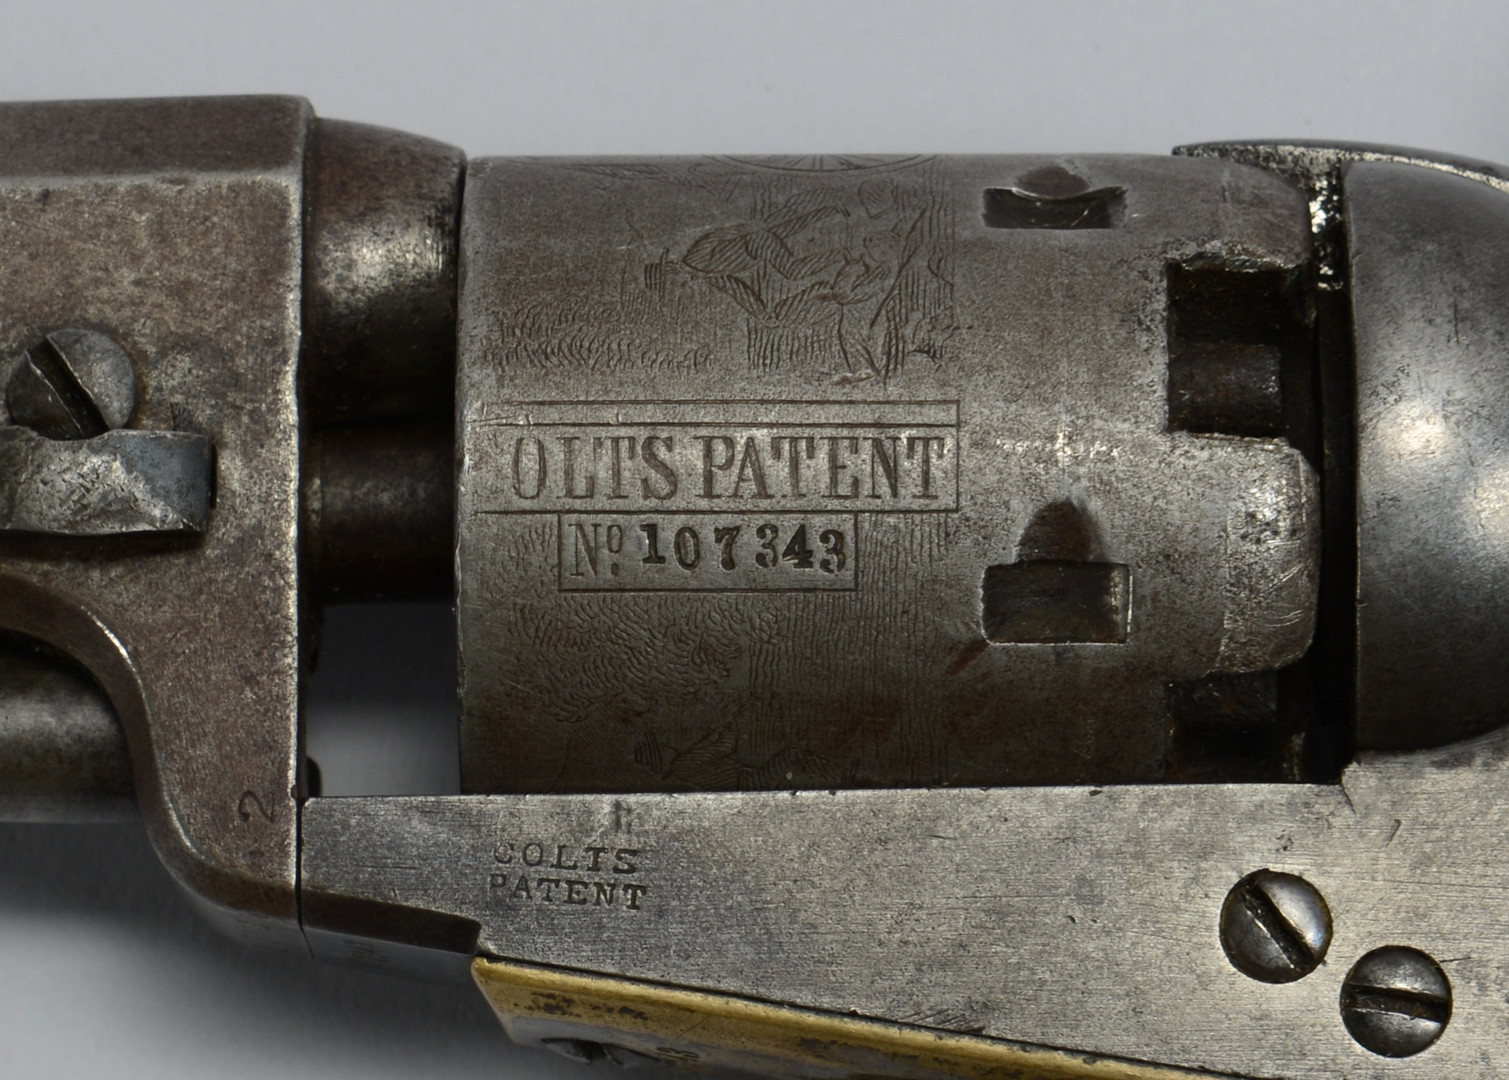 Lot 117: Colt Model 1849 Pocket Revolver, 1855